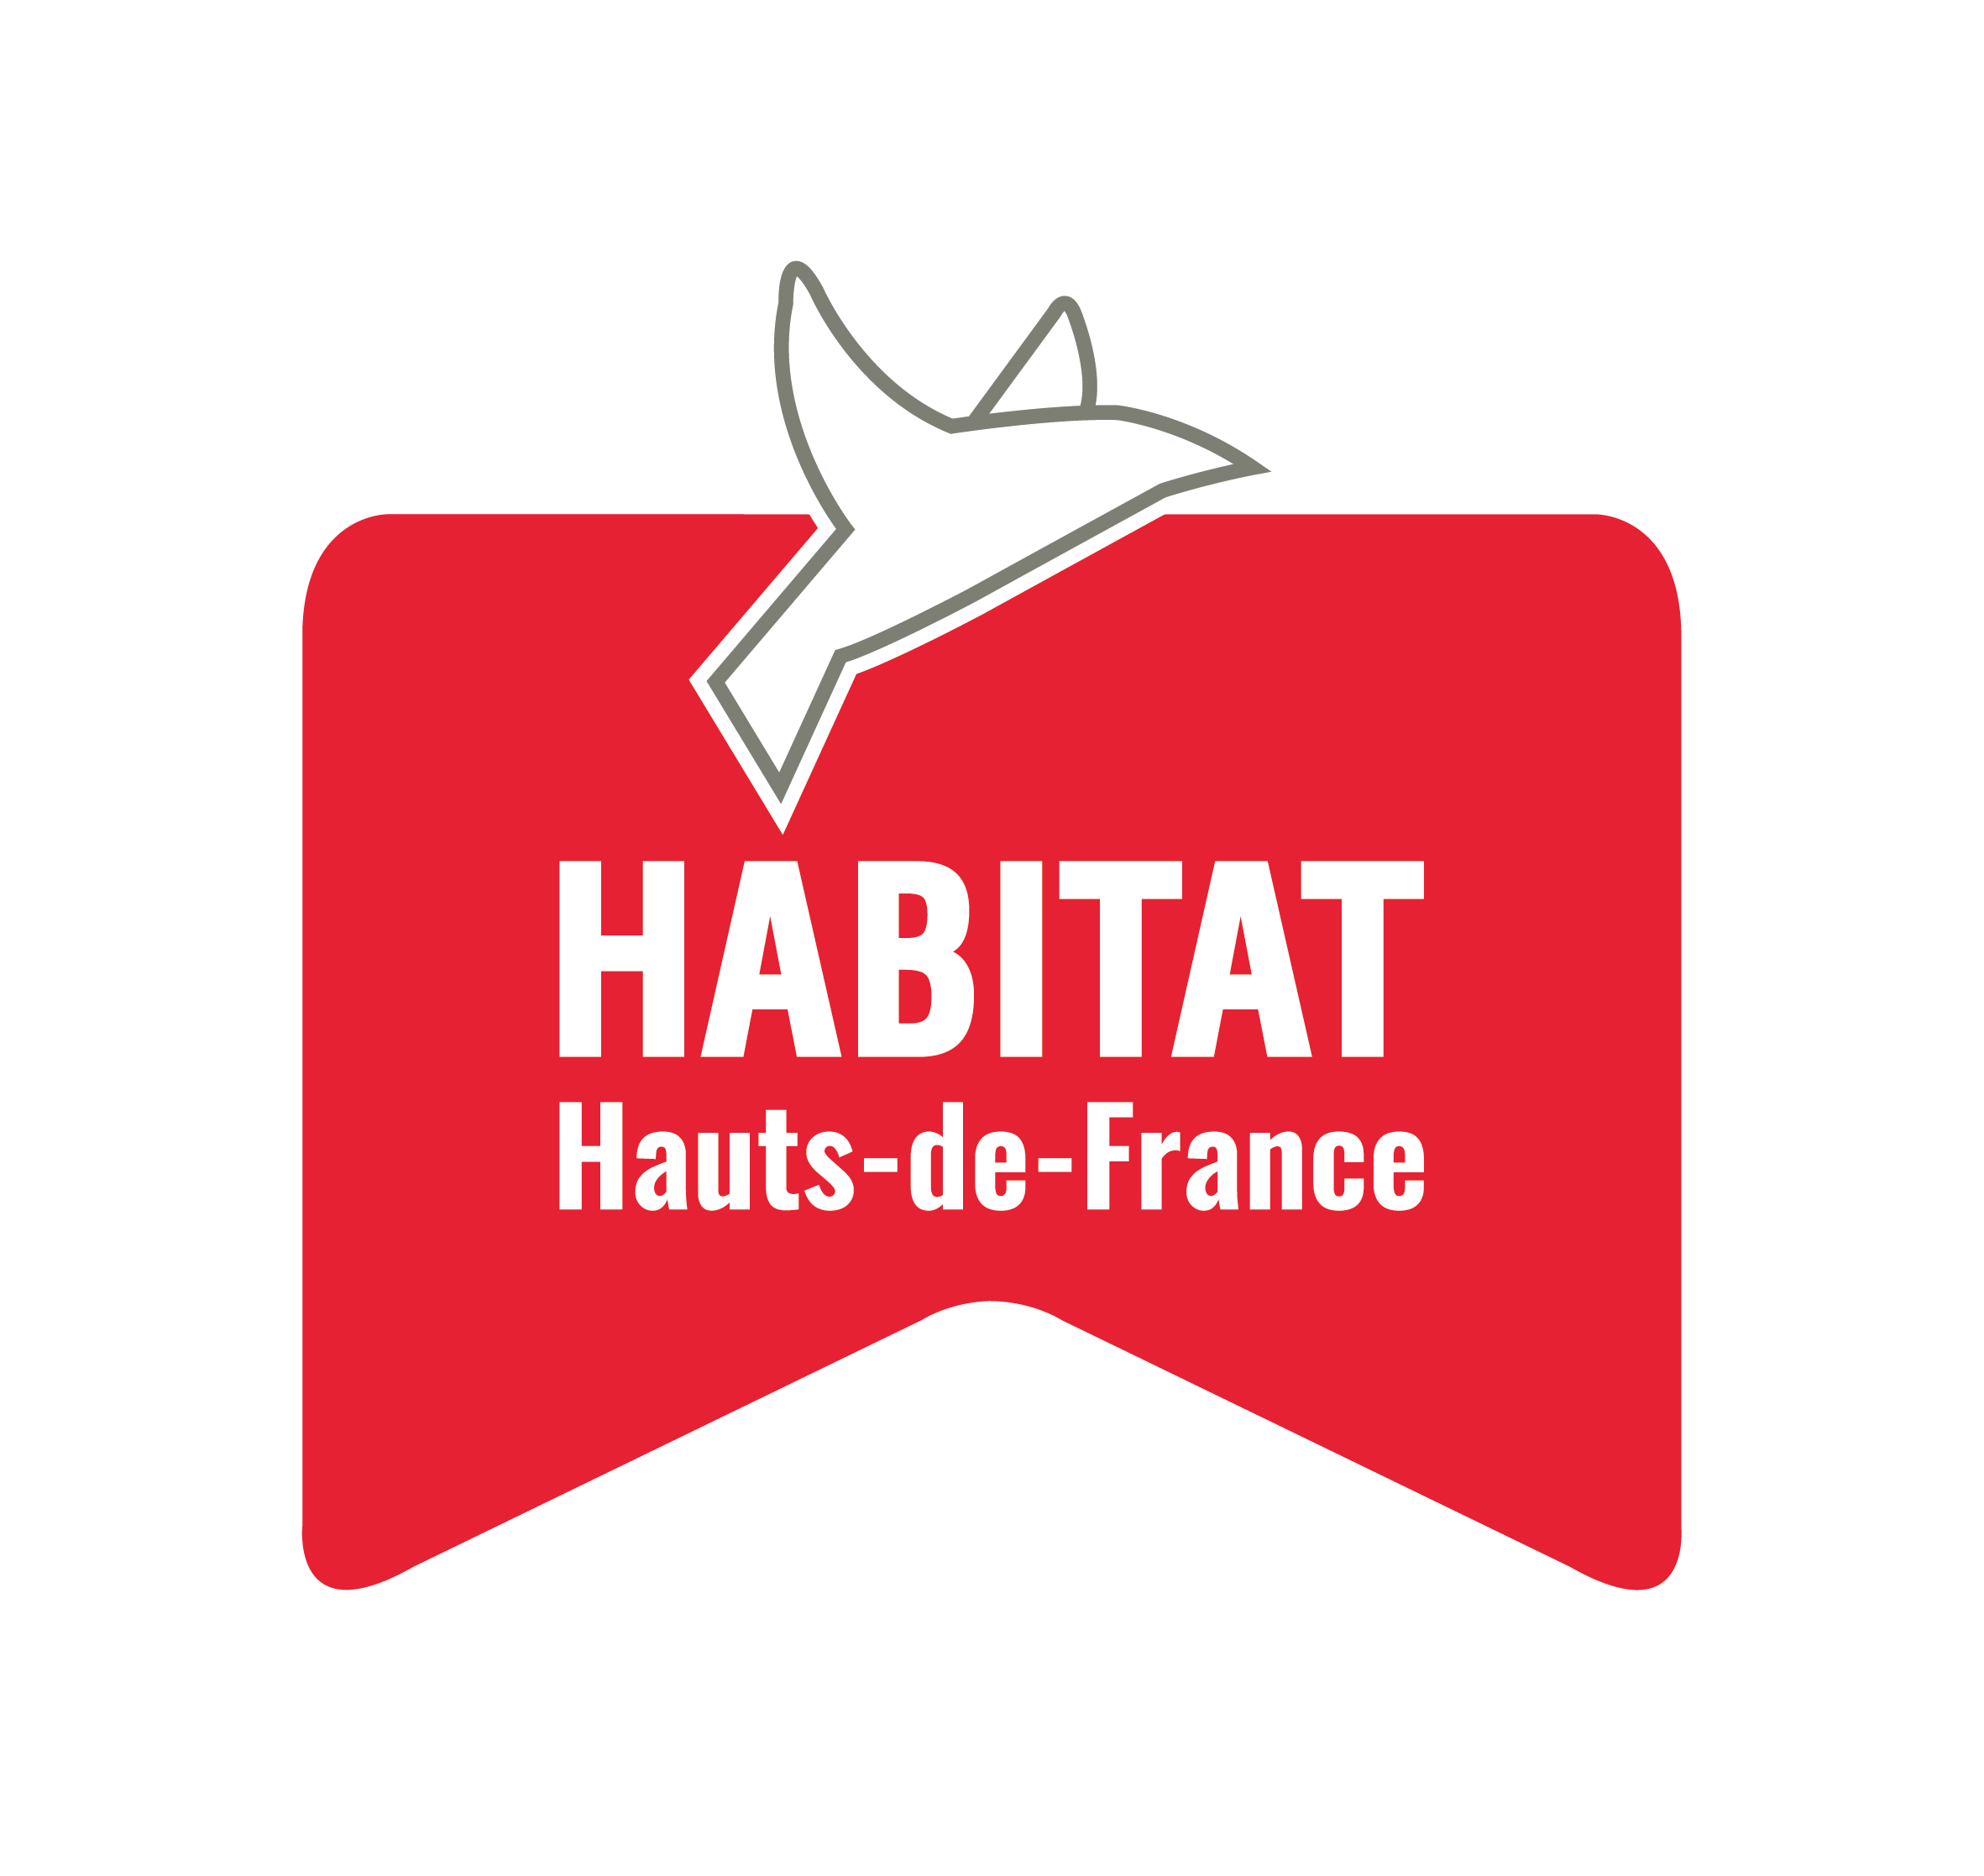 HABITAT HAUTS-DE-FRANCE